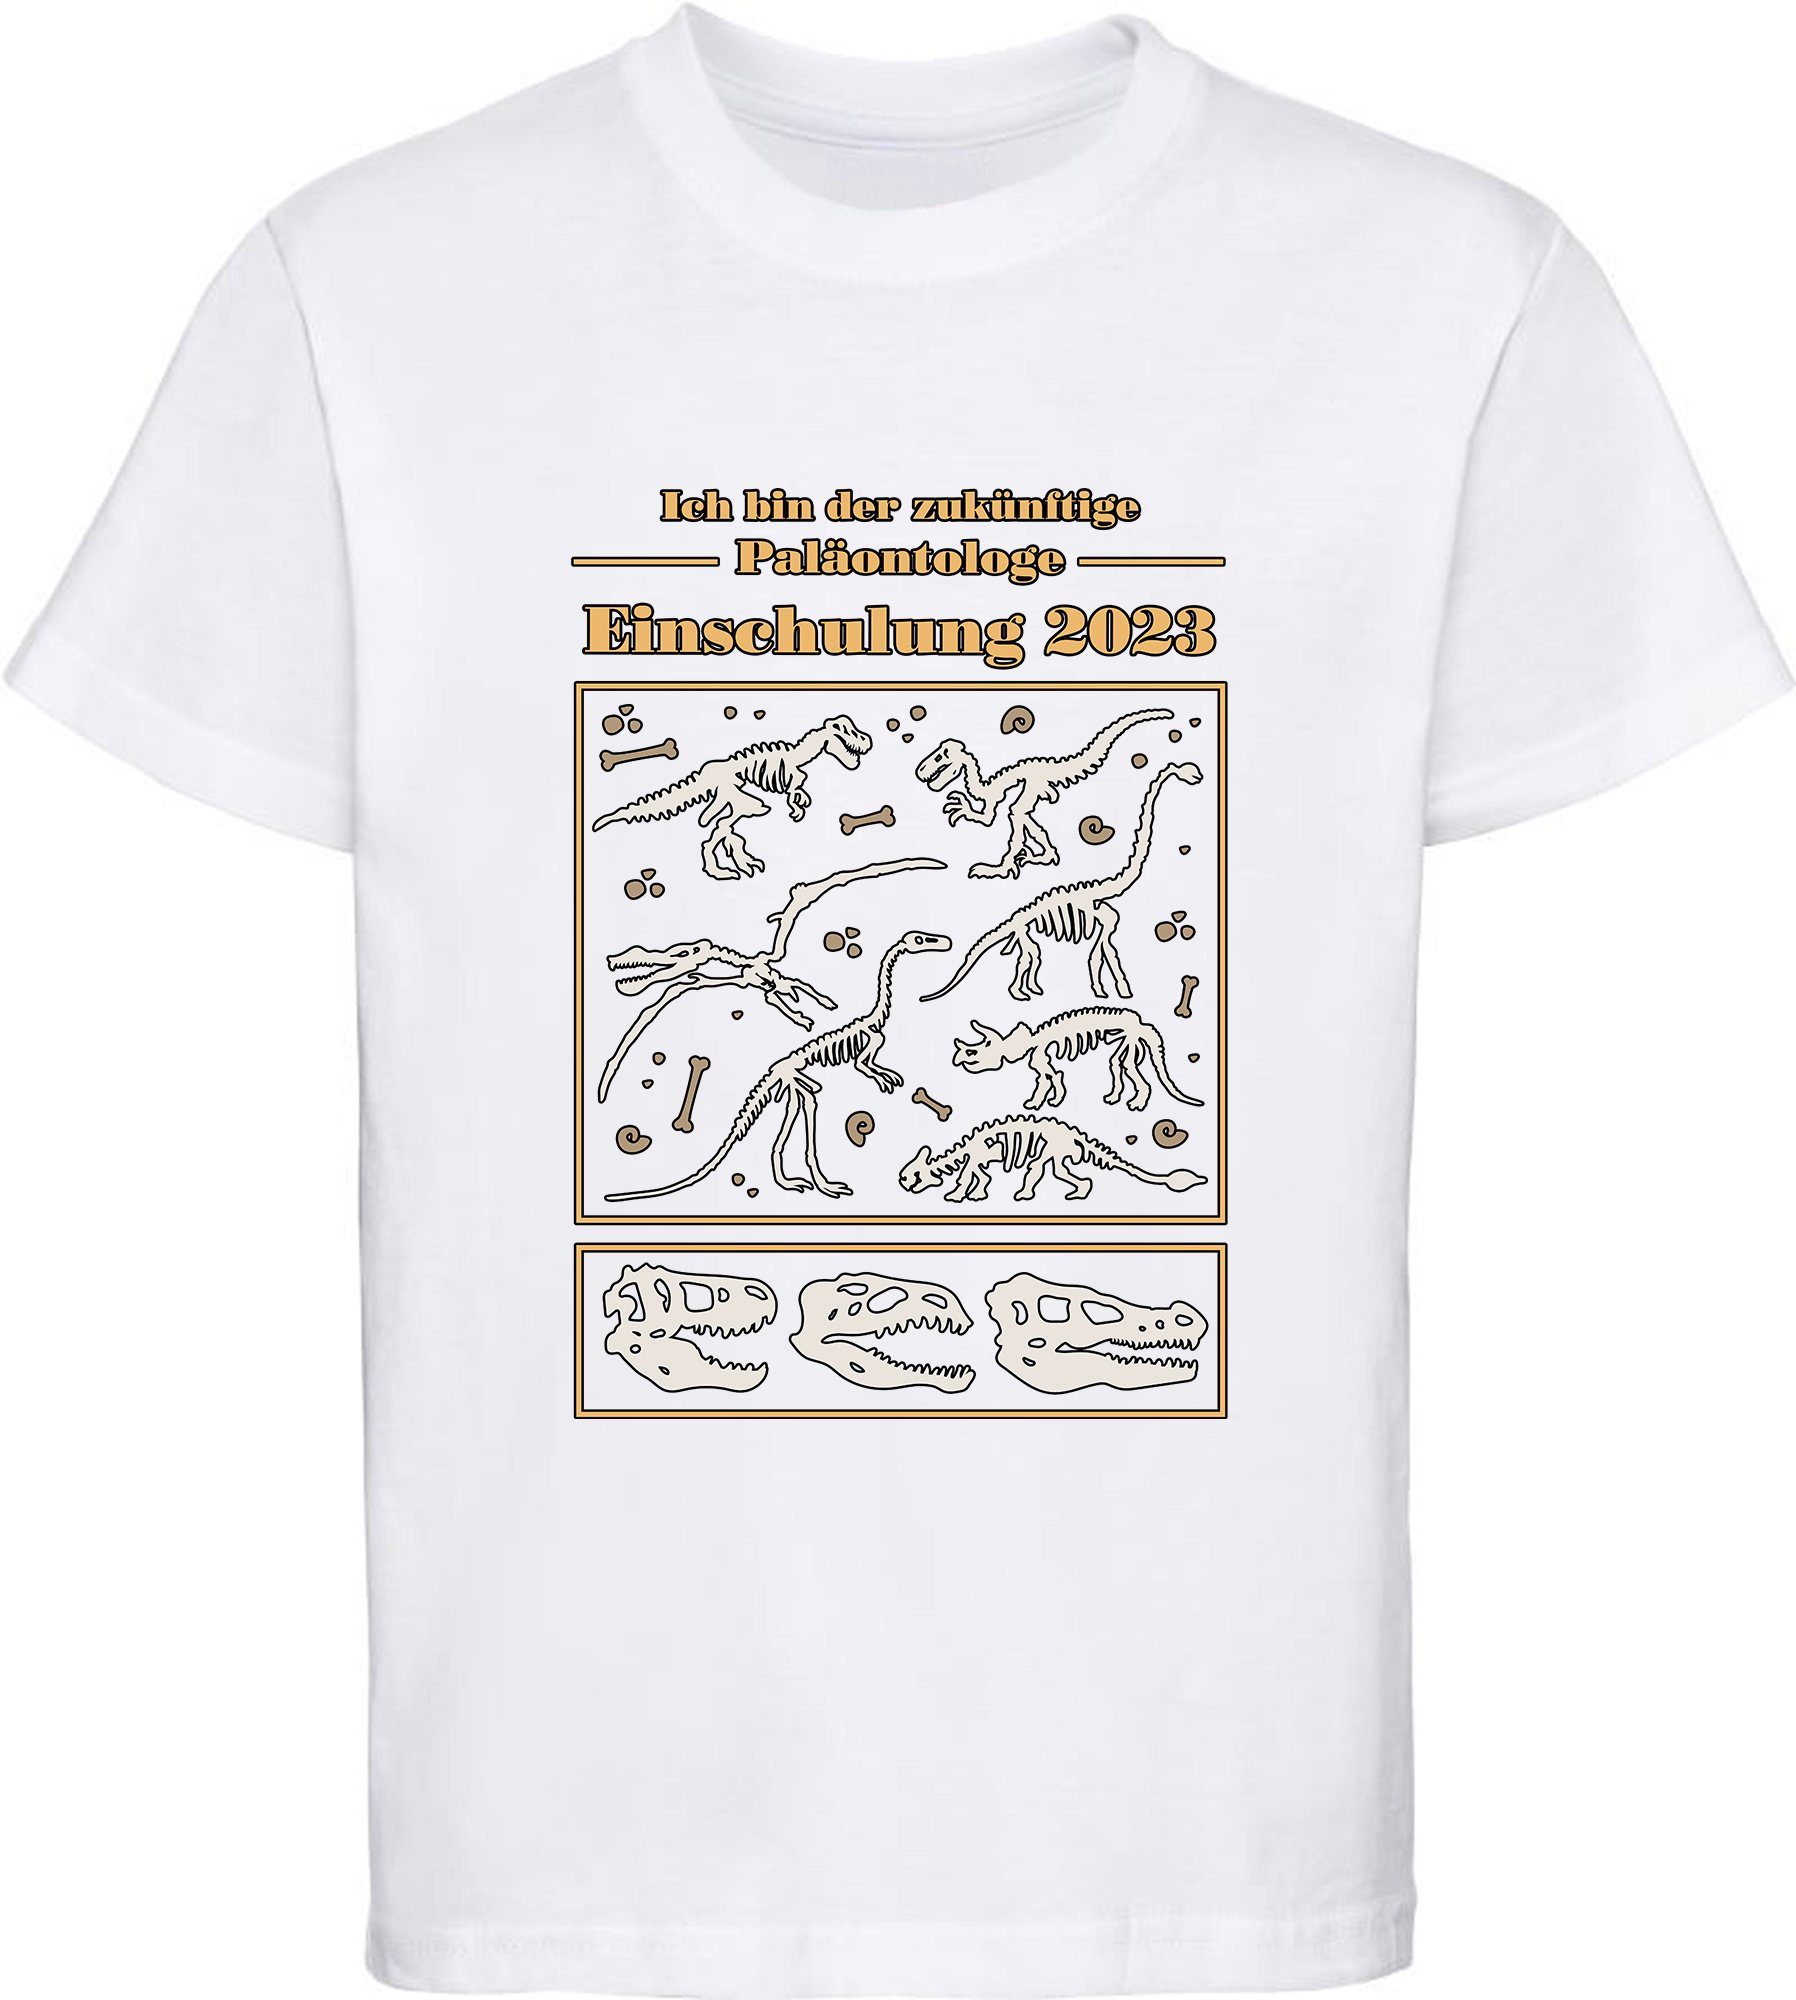 MyDesign24 Print-Shirt bedrucktes Kinder Baumwollshirt i36 2023, zukünftige Paläontologe T-Shirt blau, schwarz, Skeletten weiß, Einschulung rot, mit Dino